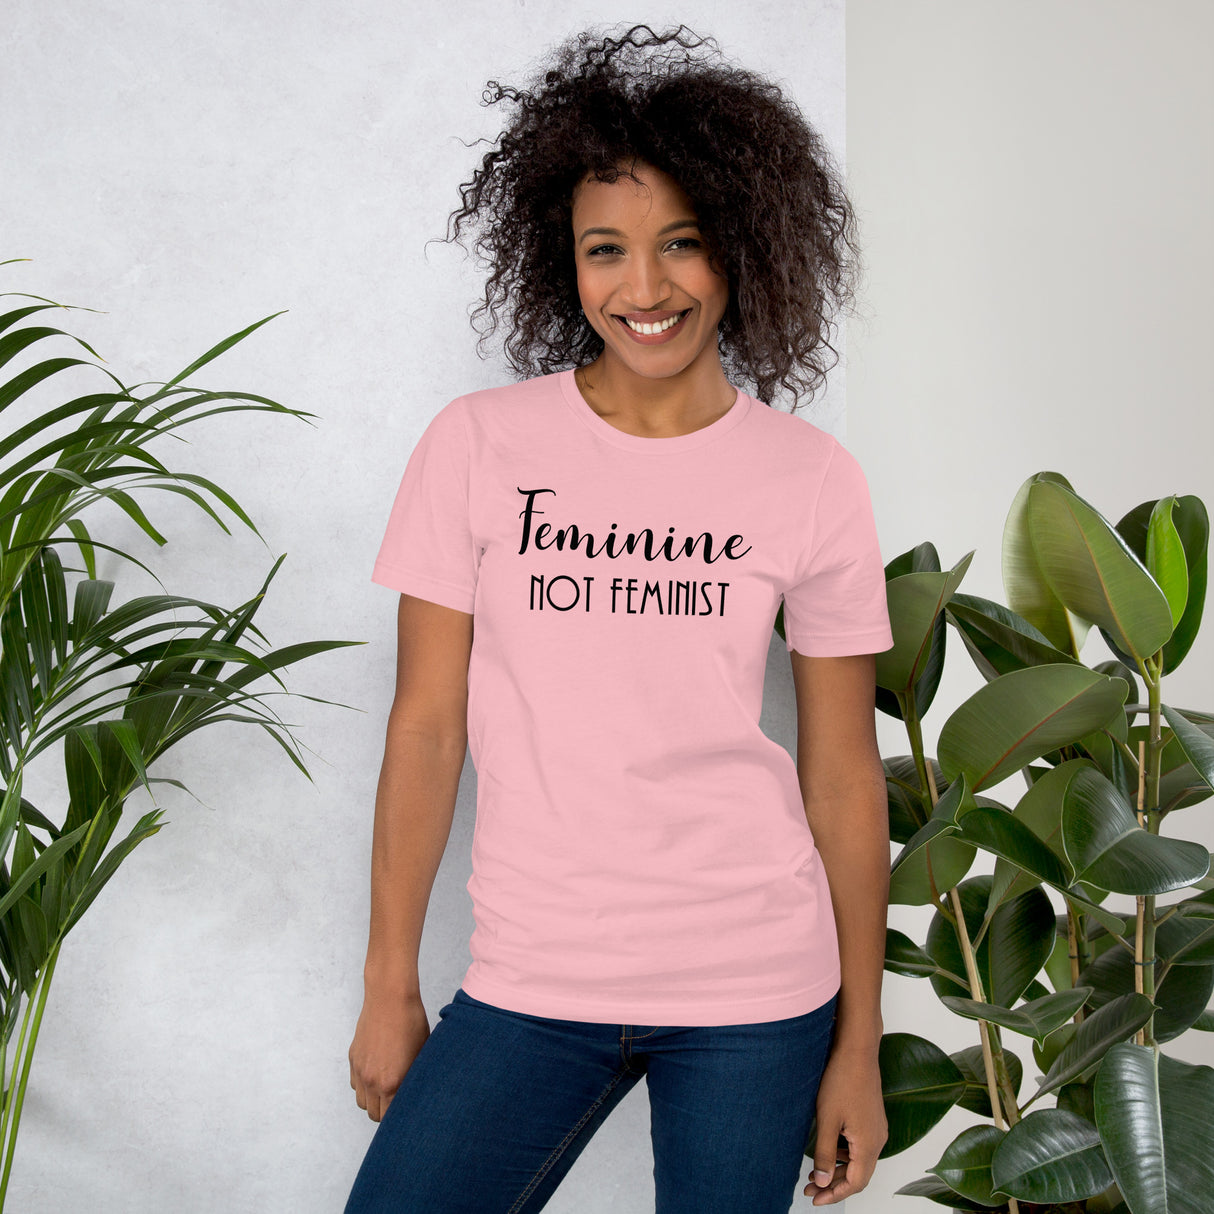 Feminine Not Feminist Shirt